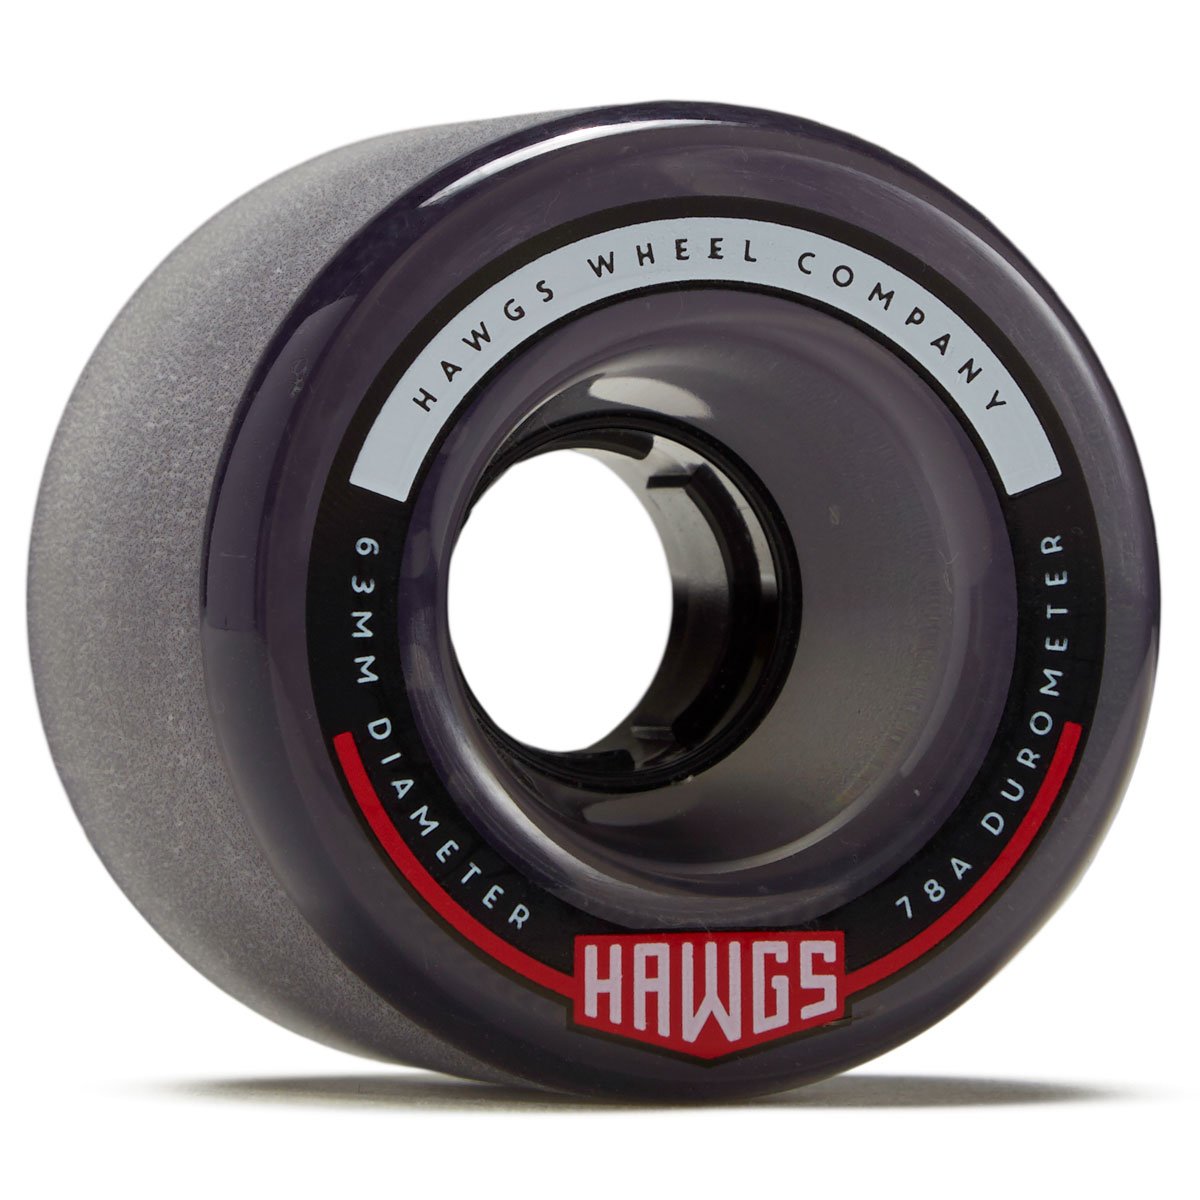 Hawgs Fatties 78a Stone Ground Longboard Wheels - Clear Black - 63mm image 1